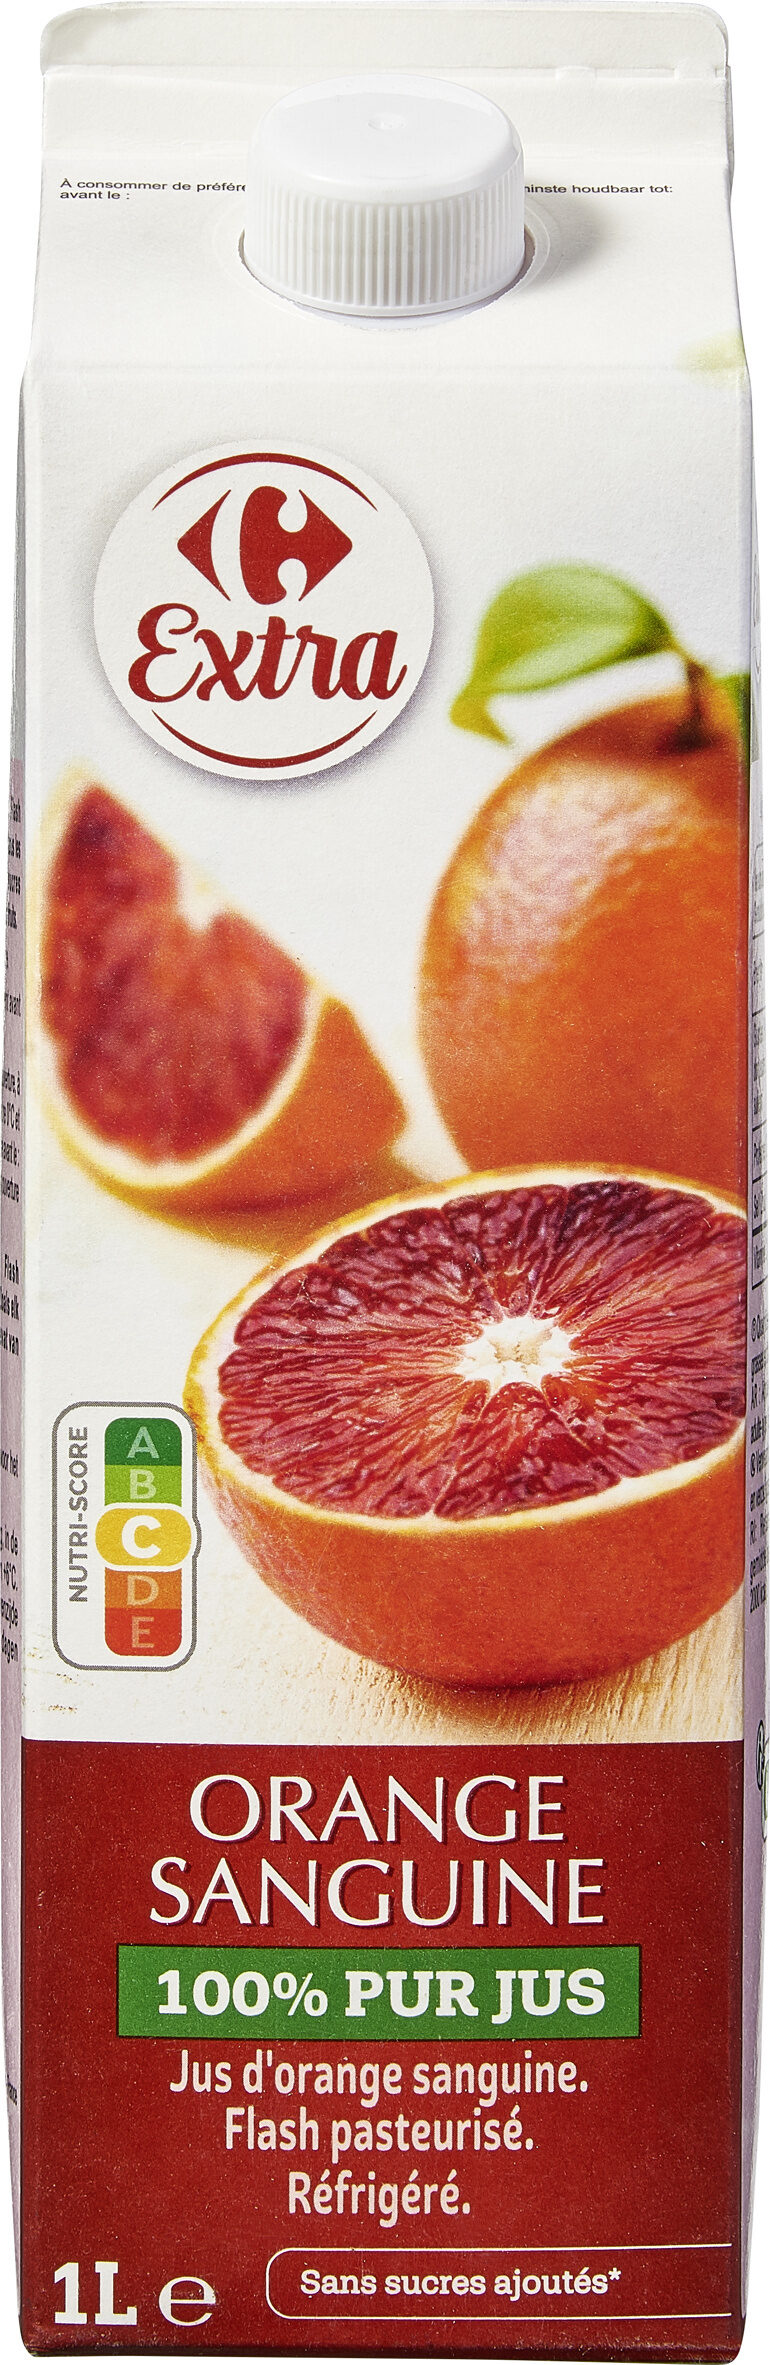 Orange sanguine 100% pur jus Jus d'orange sanguine. Flash pasteurisé. Réfrigéré. - Produkt - fr